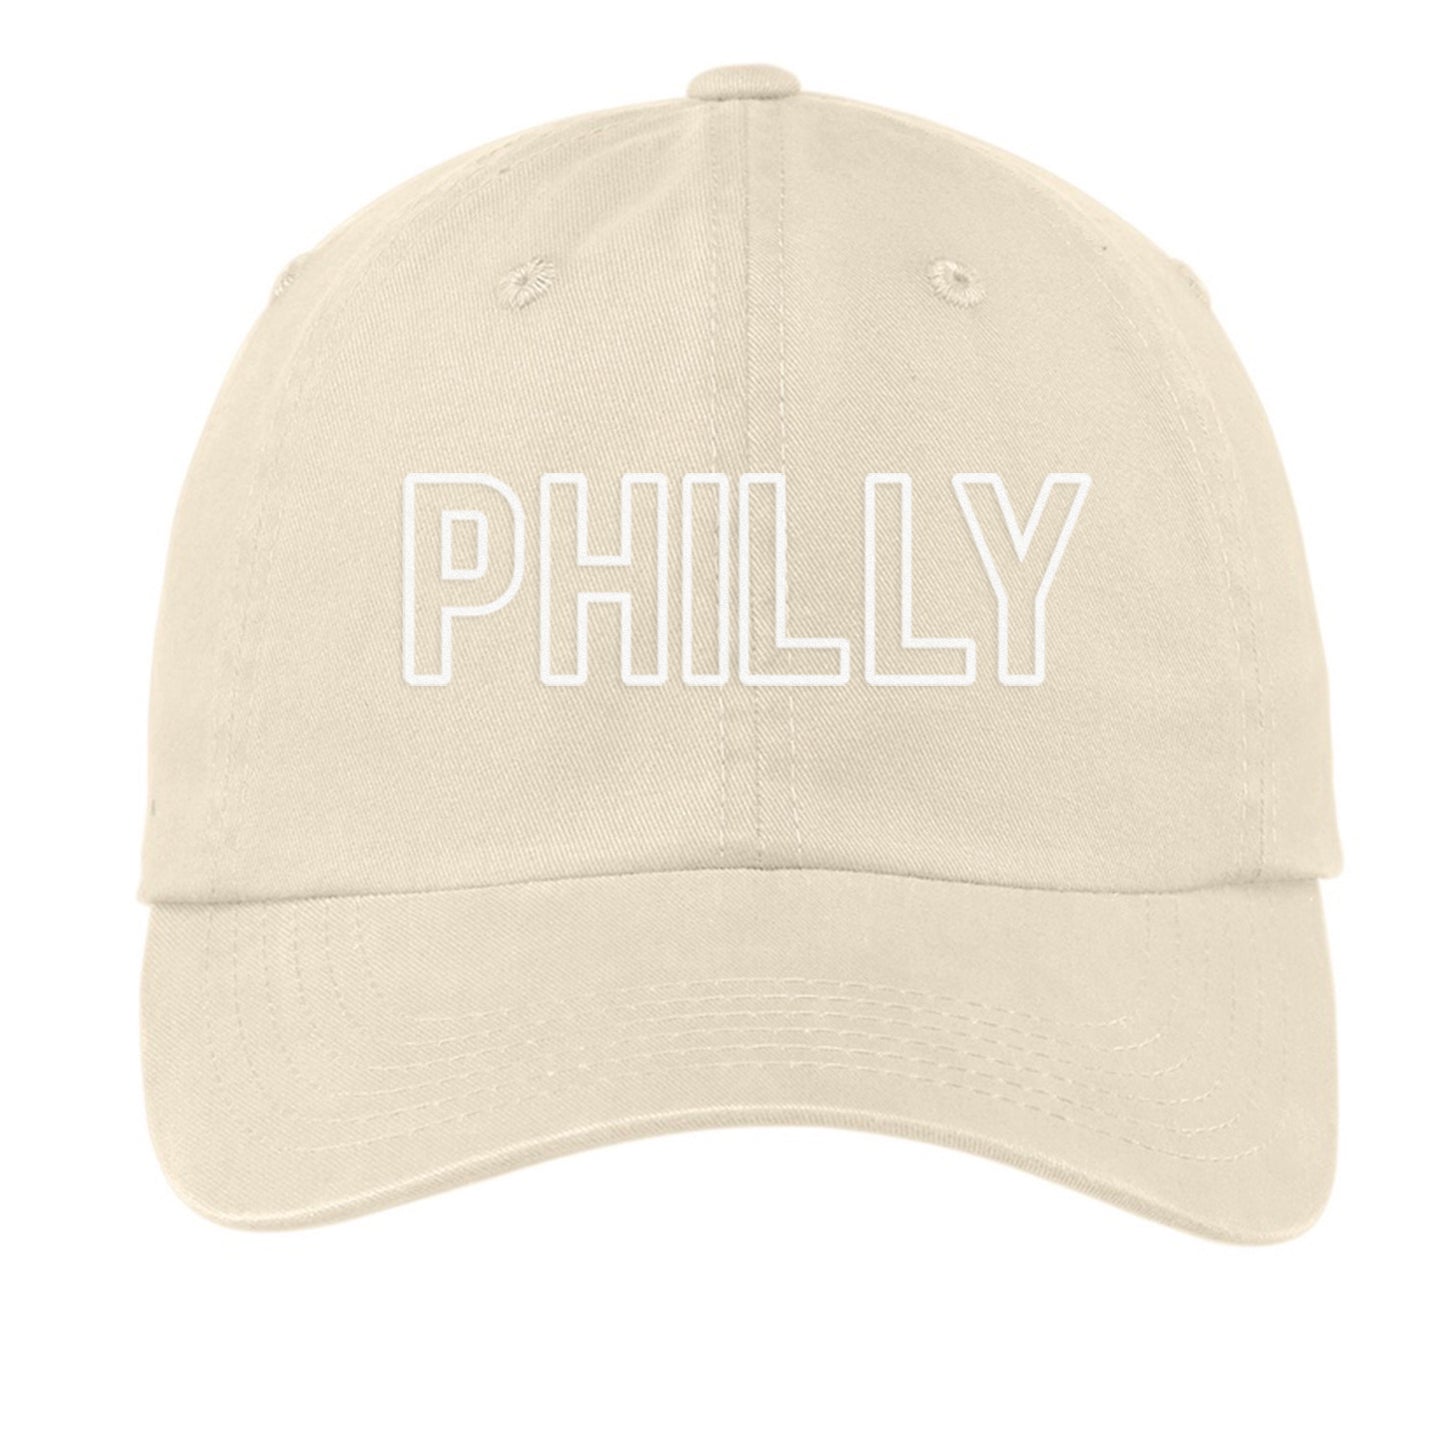 Philly Outline Baseball Cap